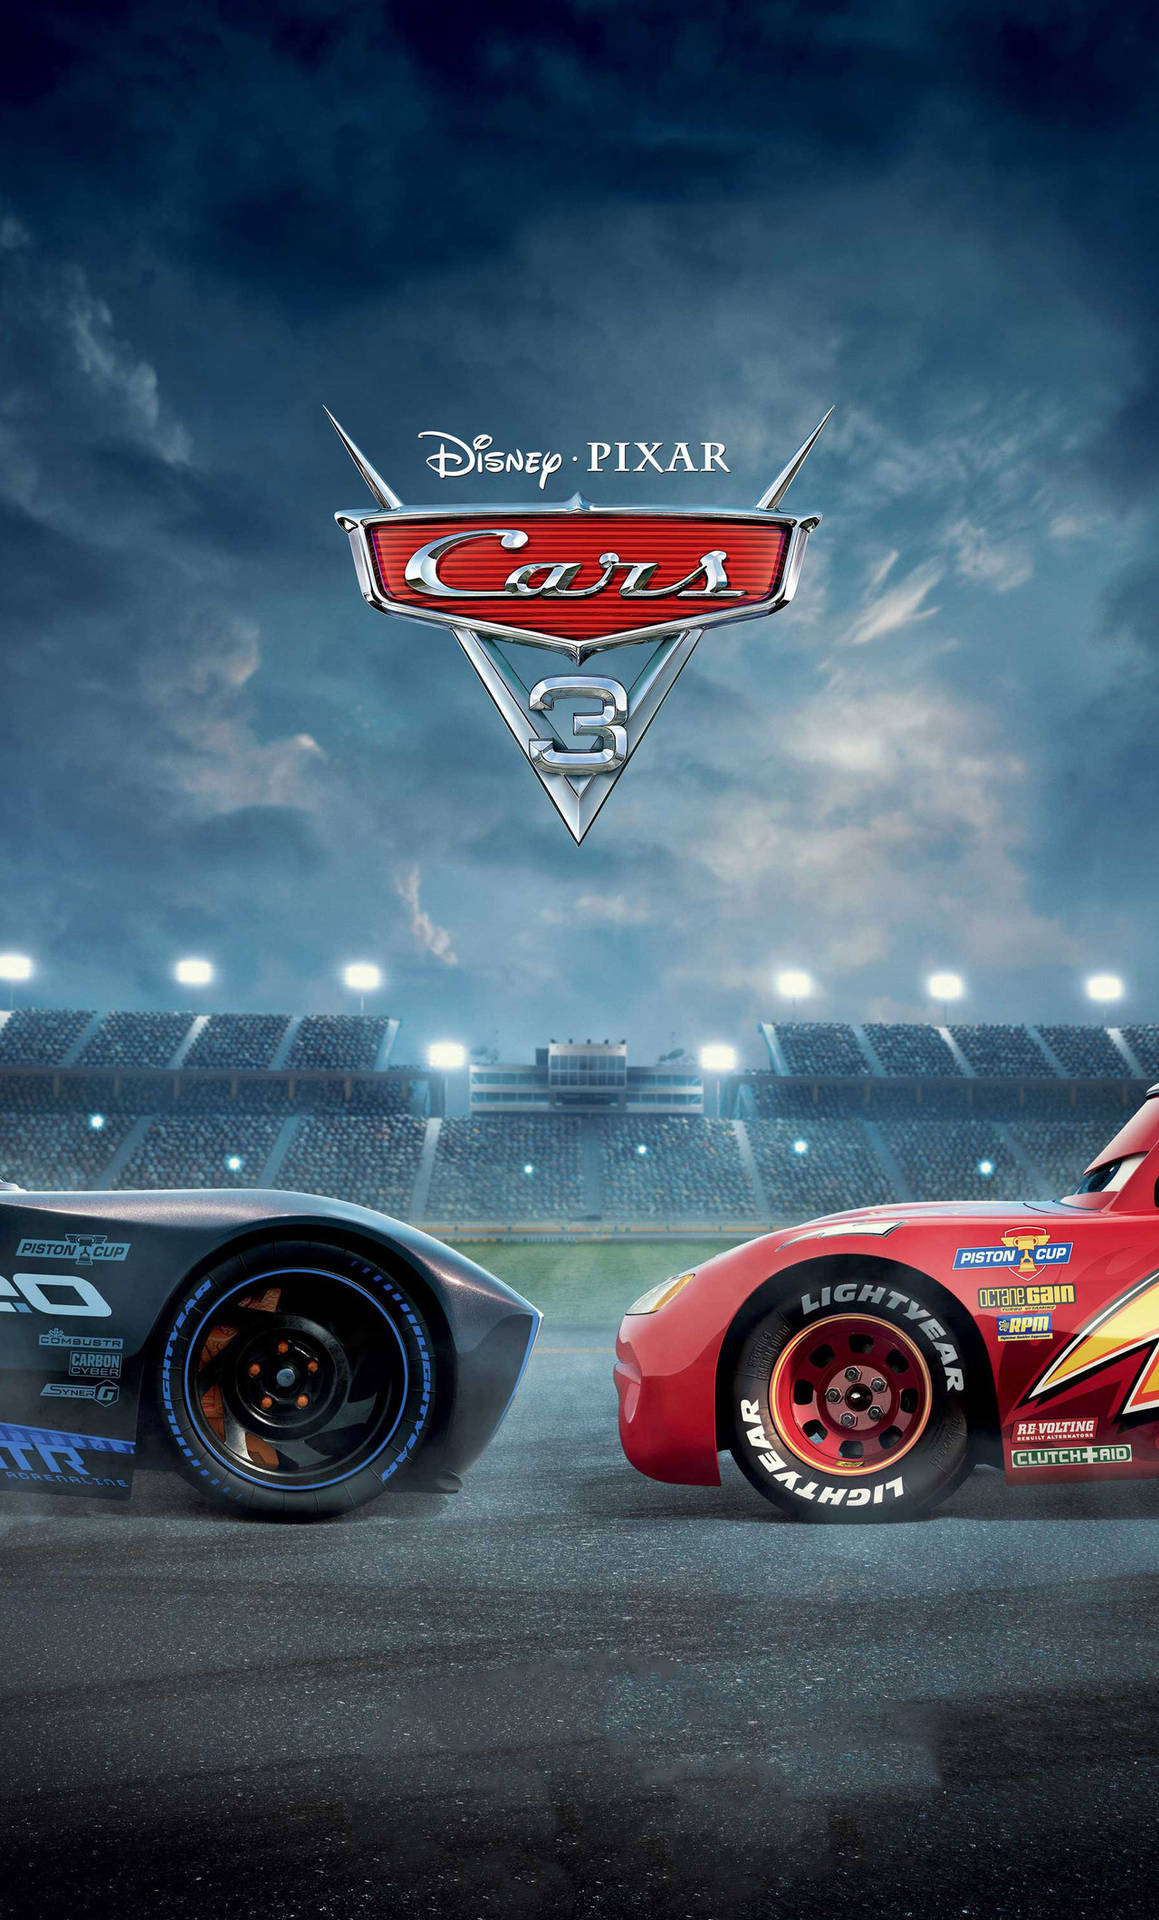 Pixarsfilm Cars 3 Wallpaper